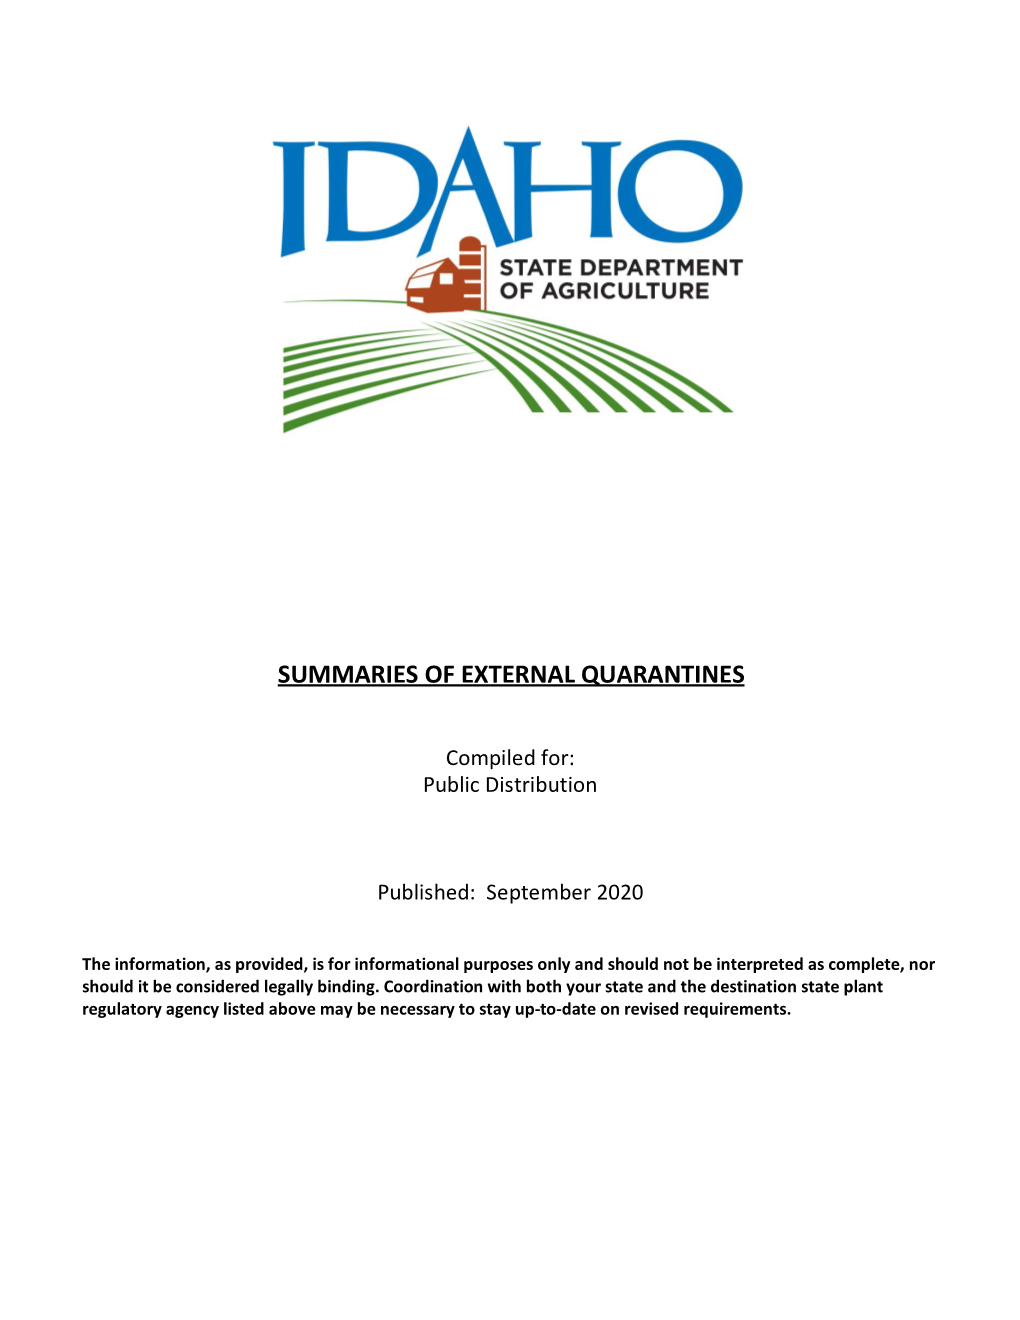 Idaho's Rules and Regulations Summary